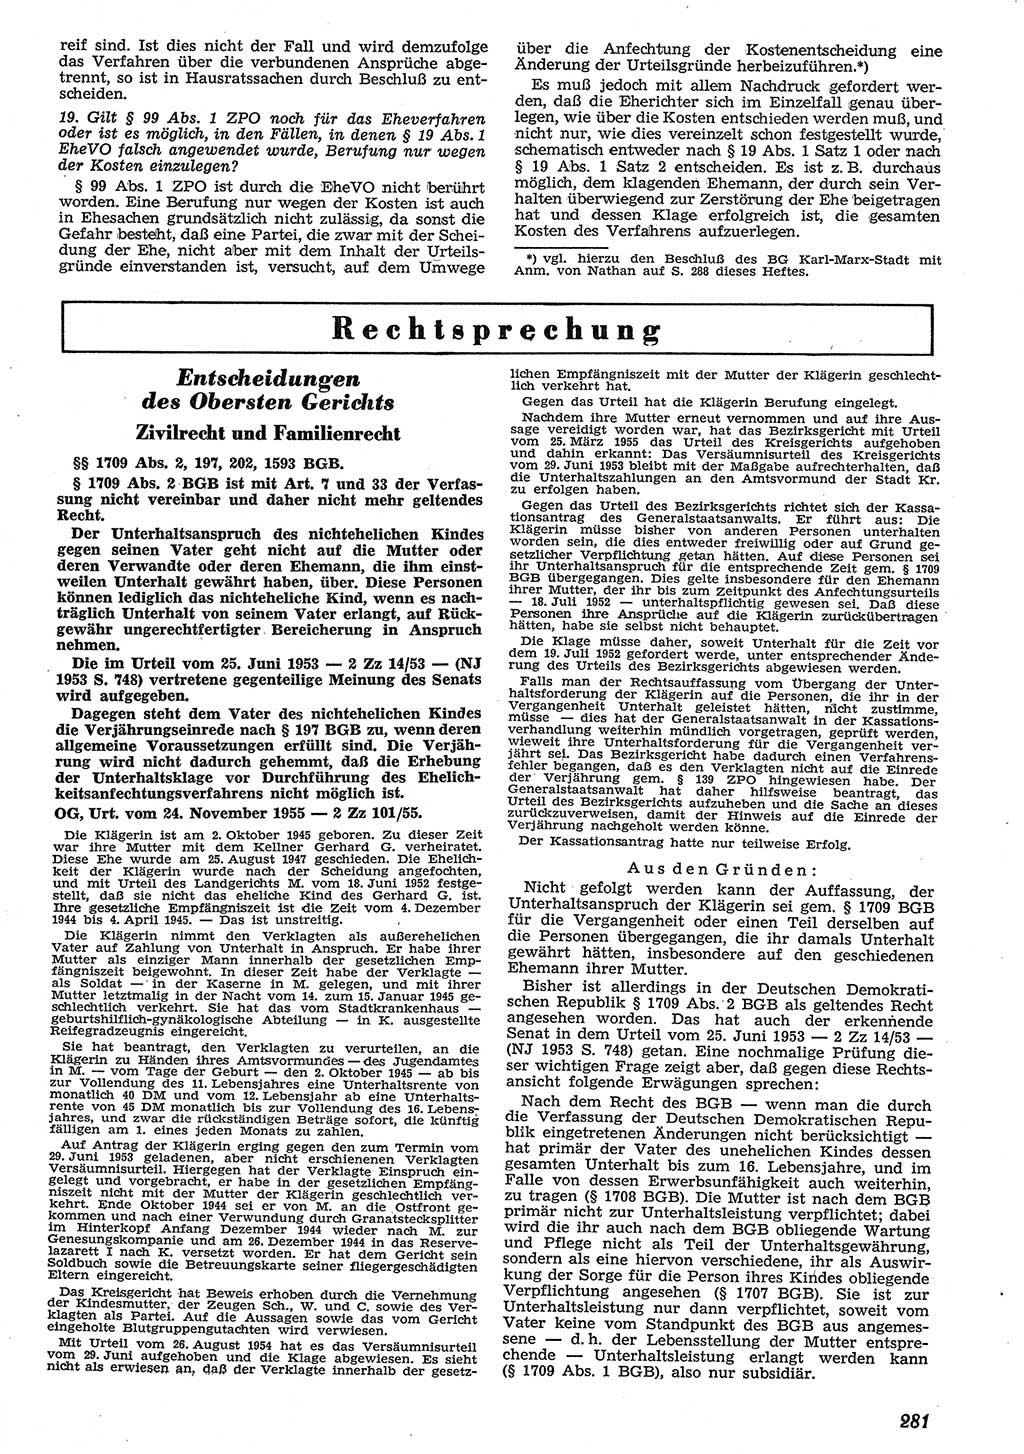 Neue Justiz (NJ), Zeitschrift für Recht und Rechtswissenschaft [Deutsche Demokratische Republik (DDR)], 10. Jahrgang 1956, Seite 281 (NJ DDR 1956, S. 281)